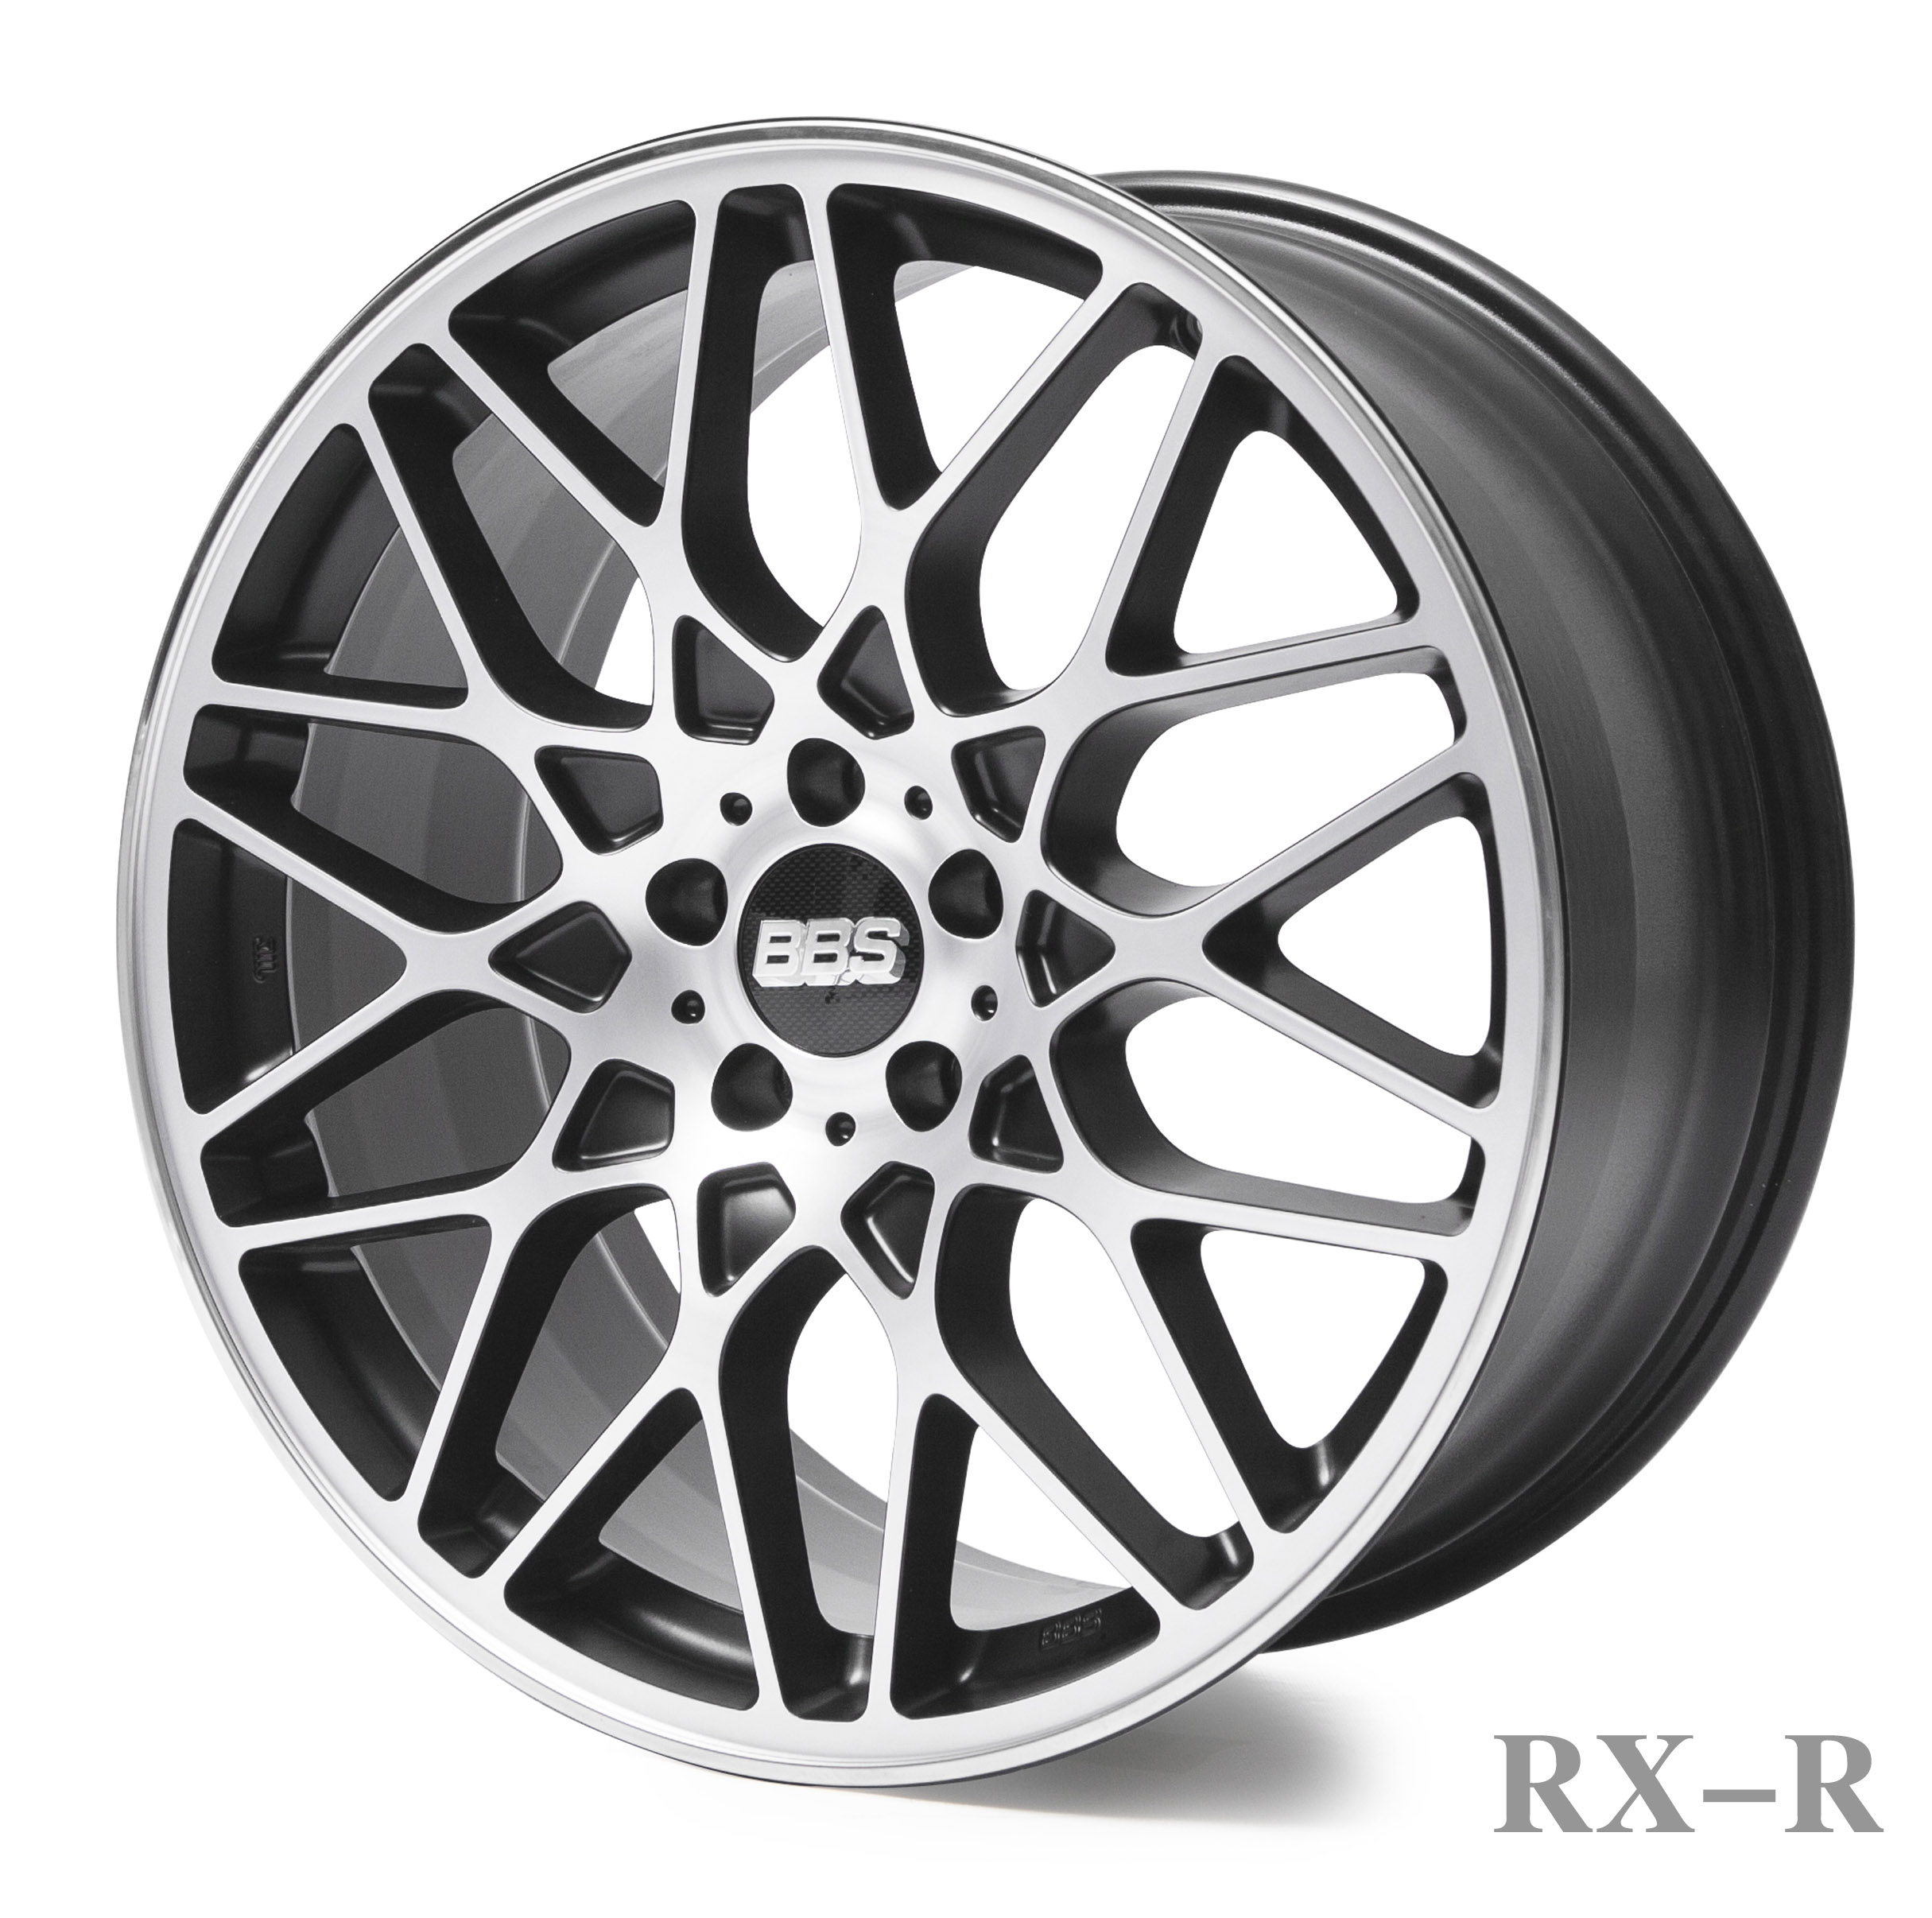 RX-R blackdiamond-cut